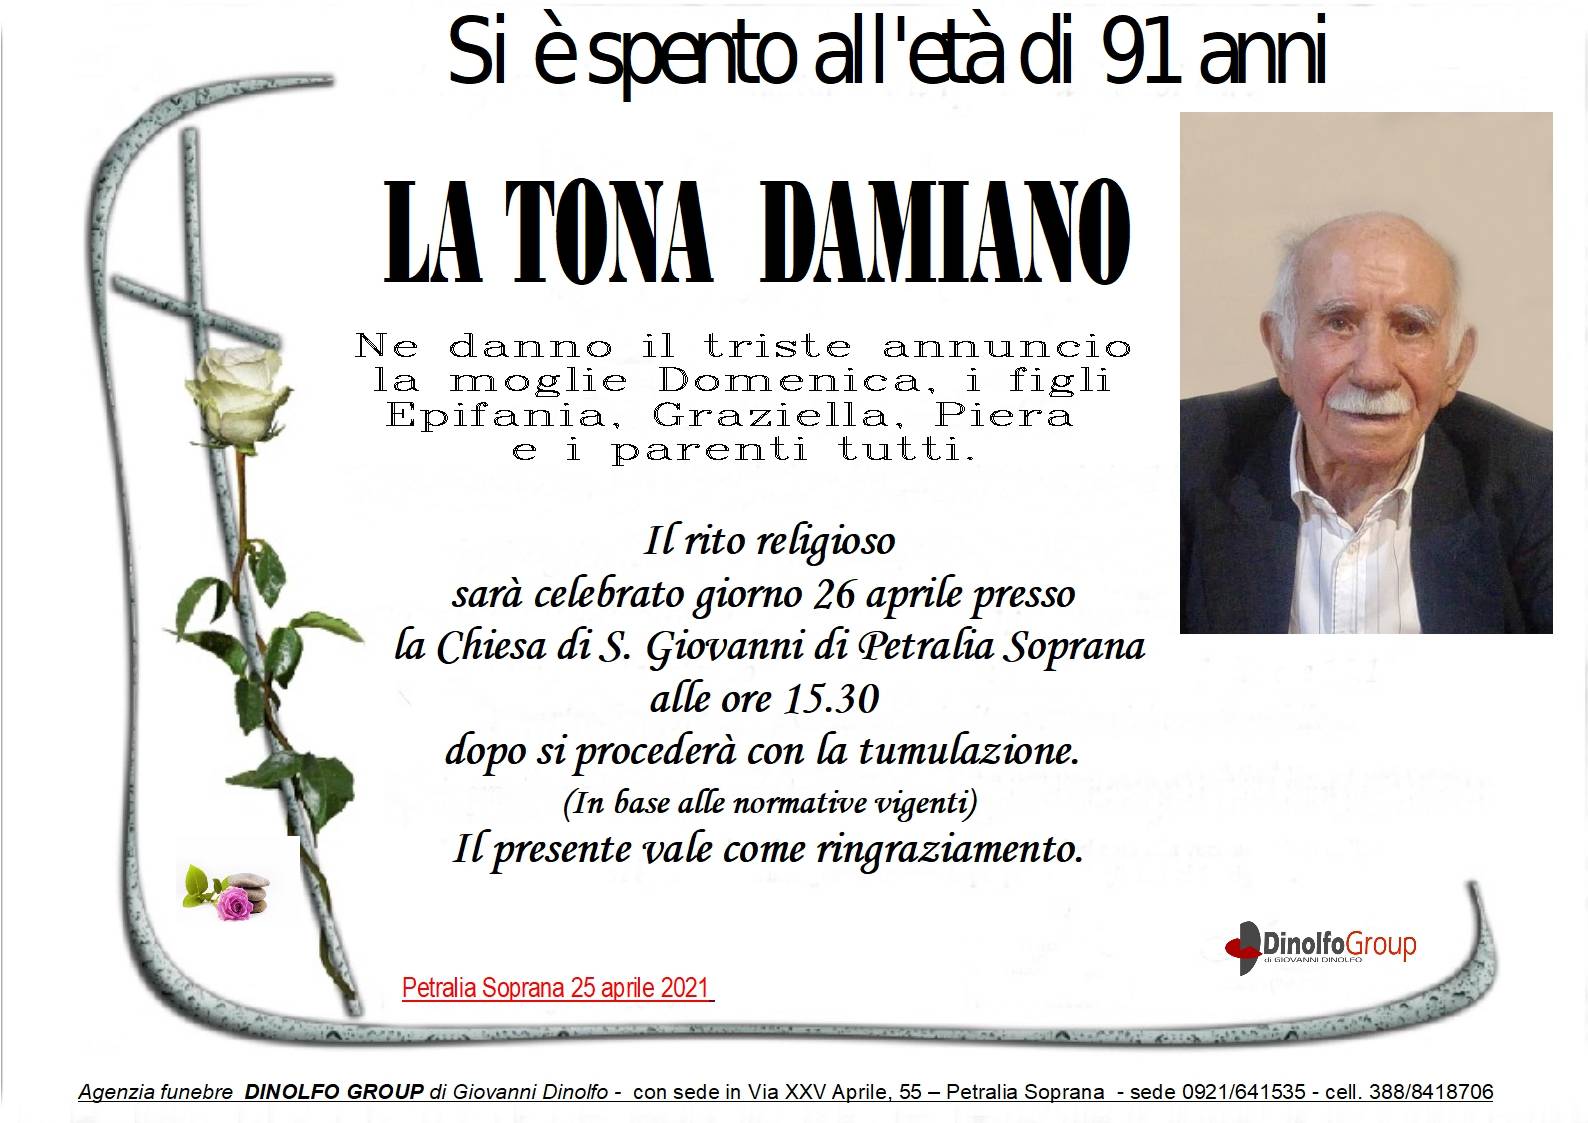 Damiano La Tona